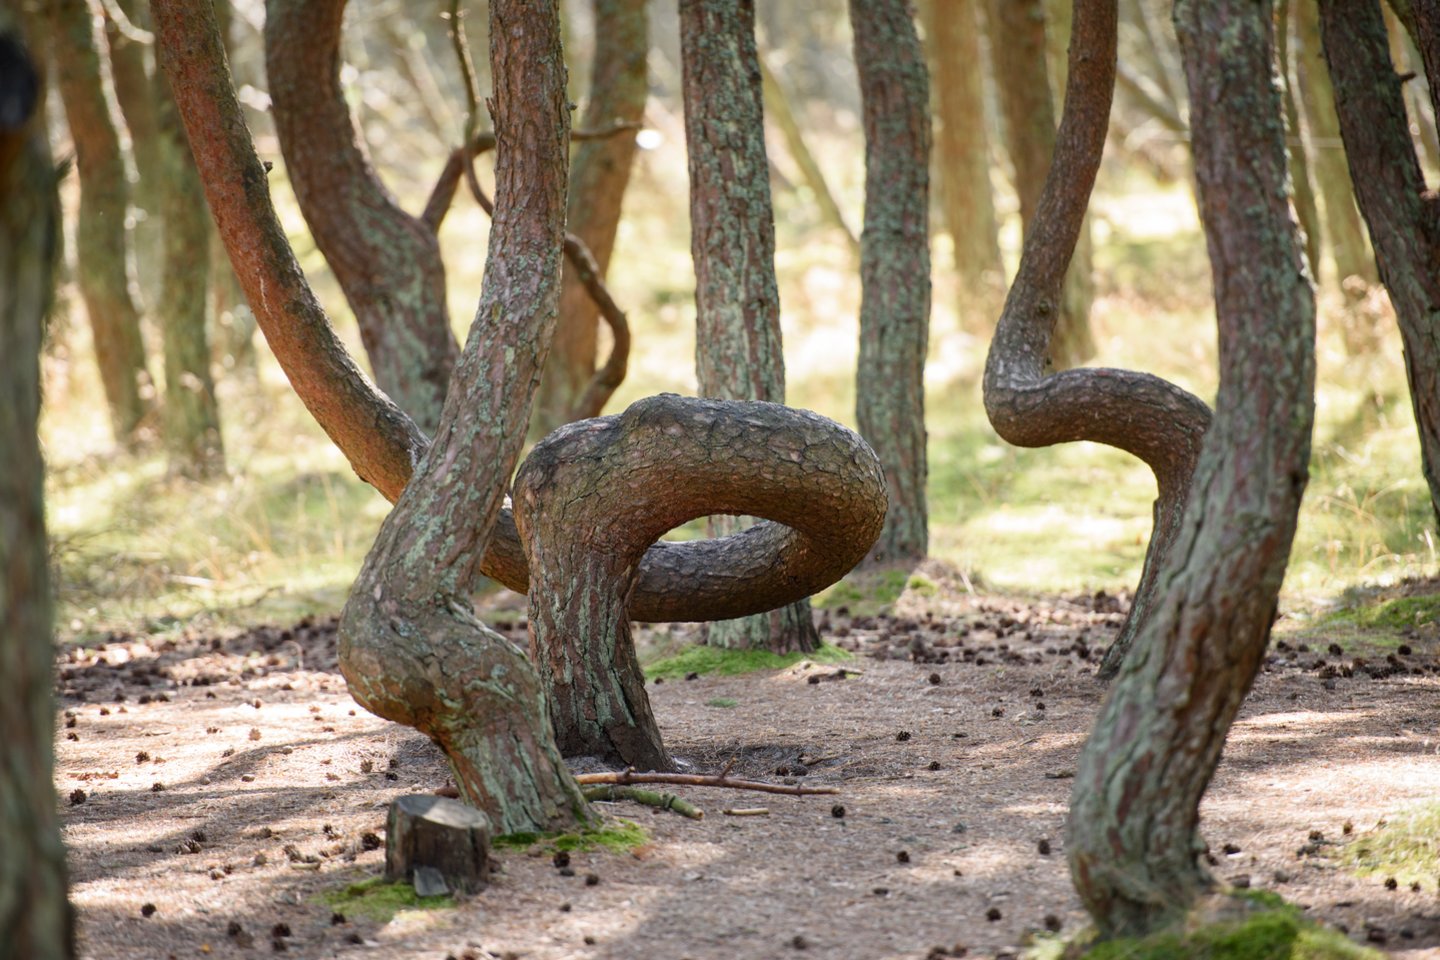 Valstybinė miškų tarnyba taip pat pranešė, kad Naglių gamtiniame rezervate 400 hektarų plote išplitęs verpiko vienuolio židinys nebus naikinamas.<br>D.Umbraso nuotr.